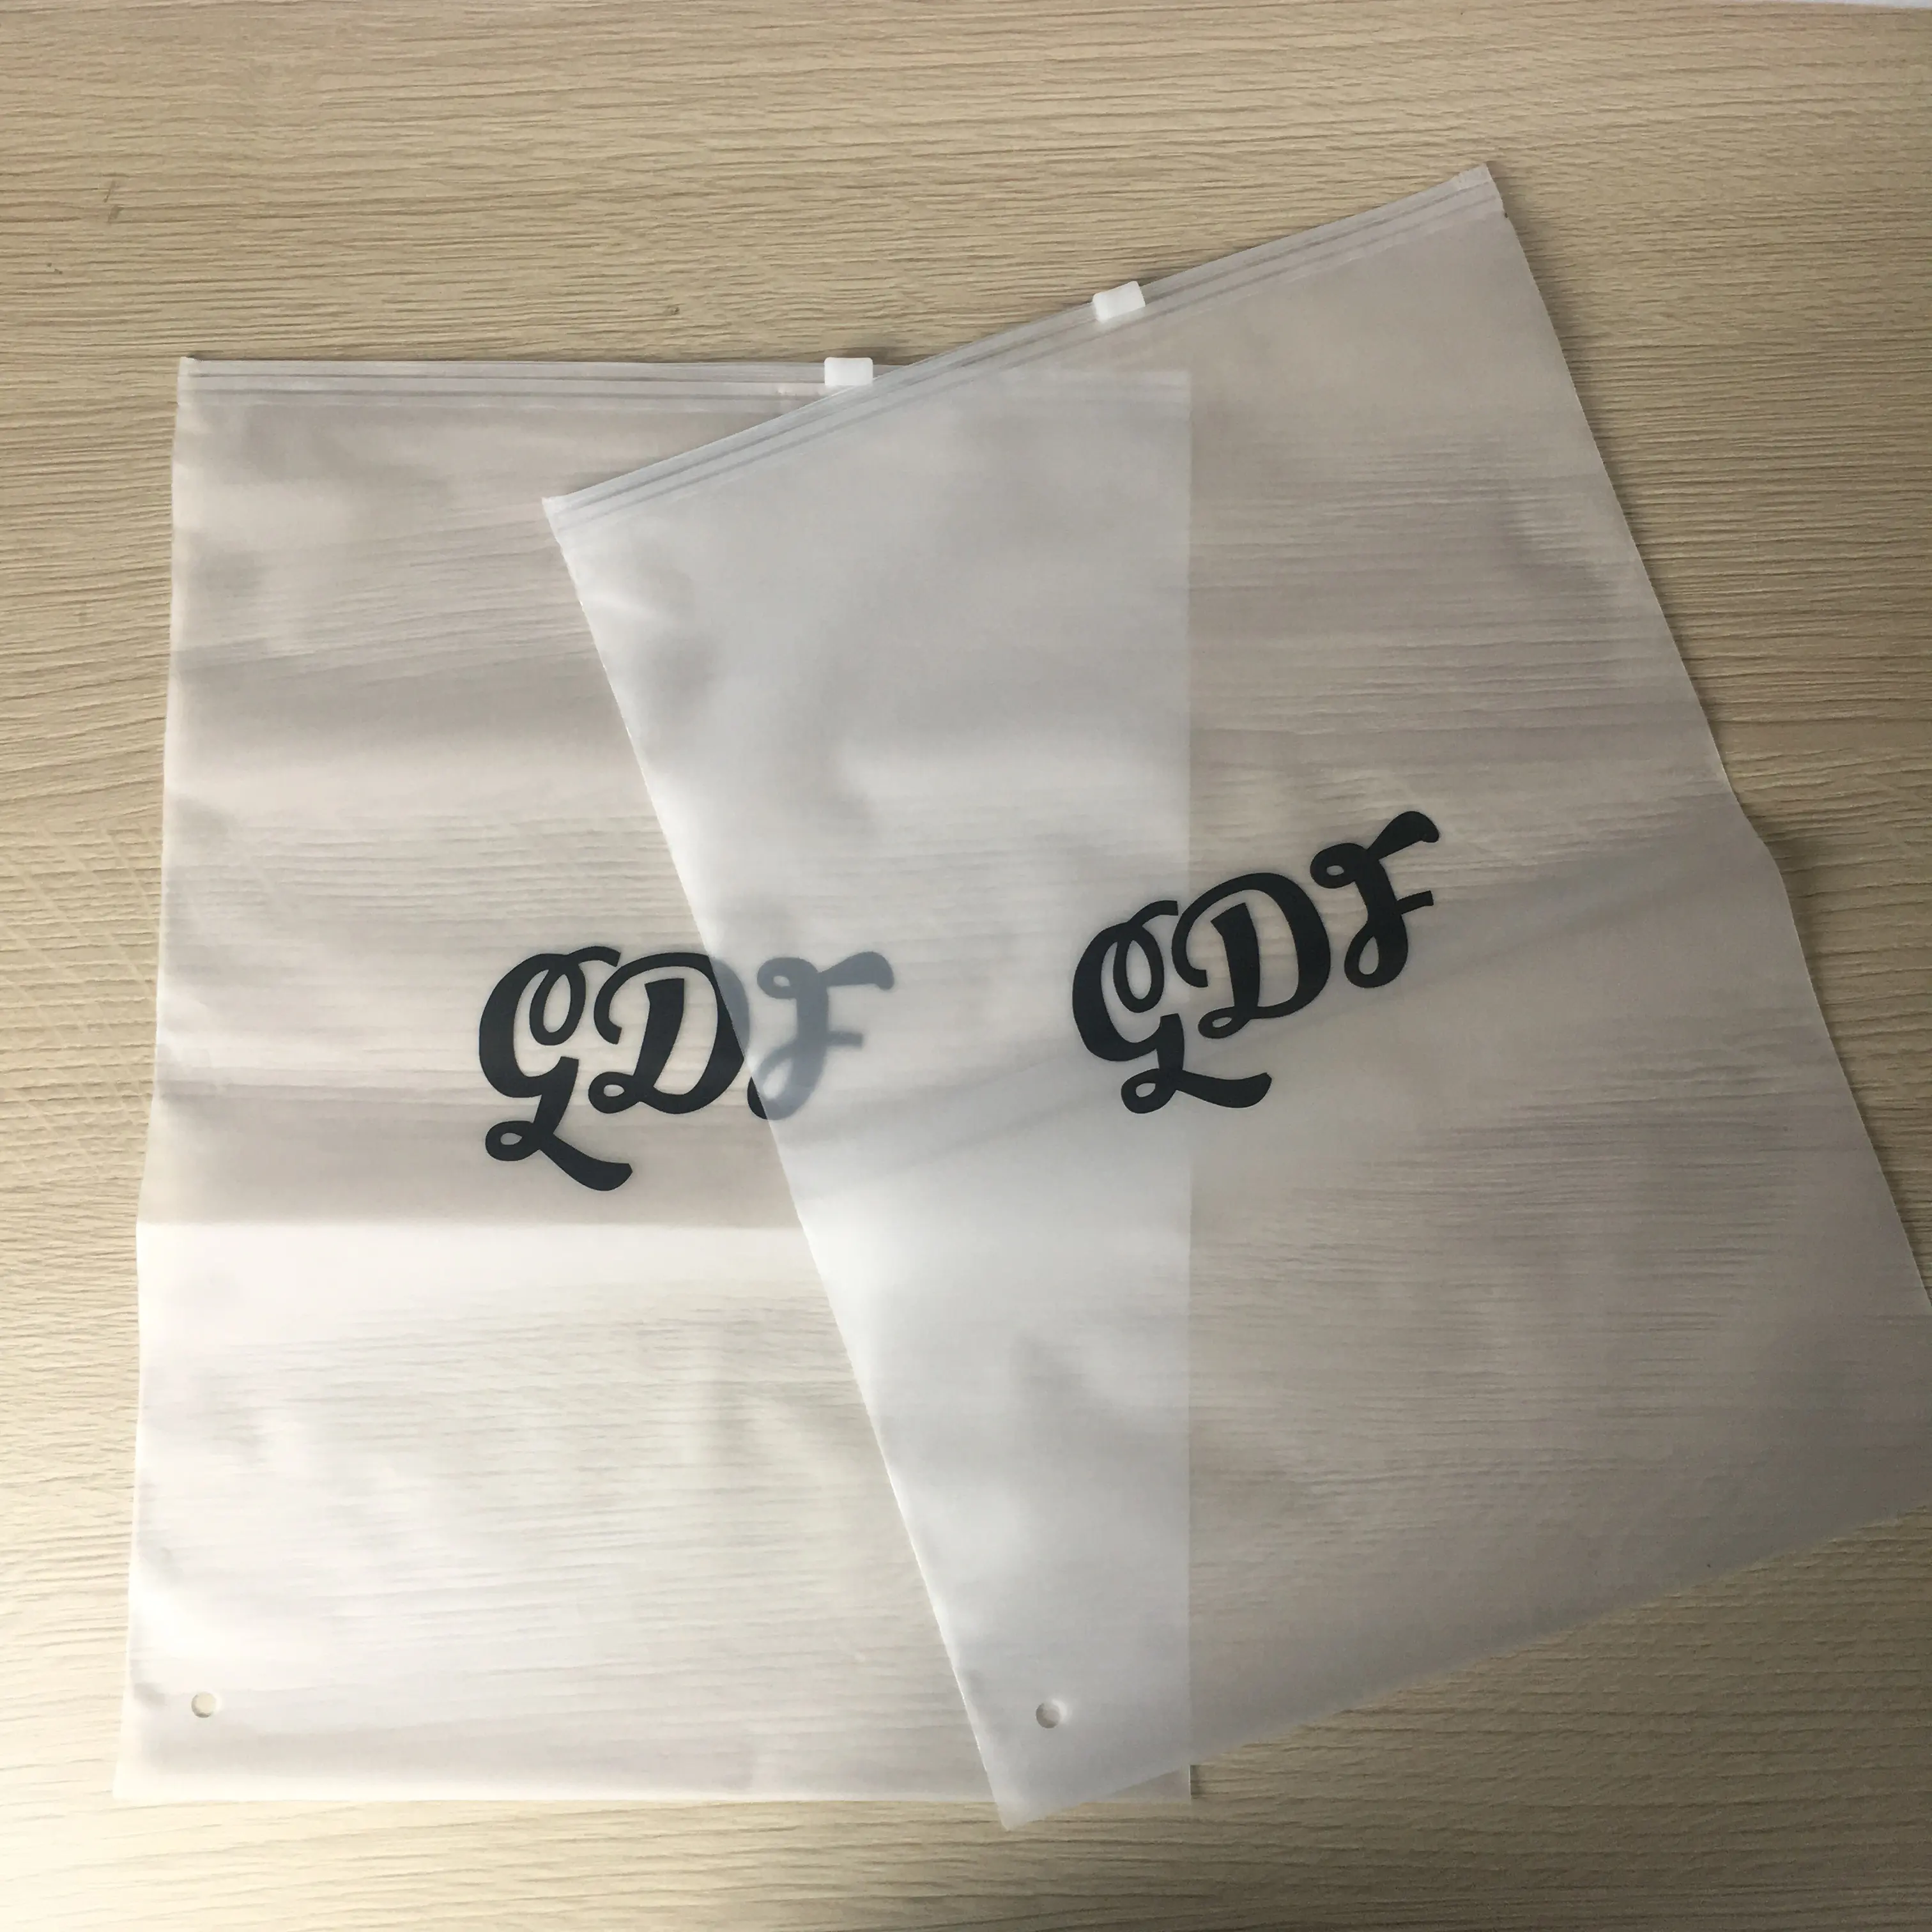 Trung Quốc Nhà Cung Cấp Bán Buôn Hàng May Mặc Tùy Chỉnh PVC EVA Nhựa Zipper Bag Cho T-shirt Bao Bì